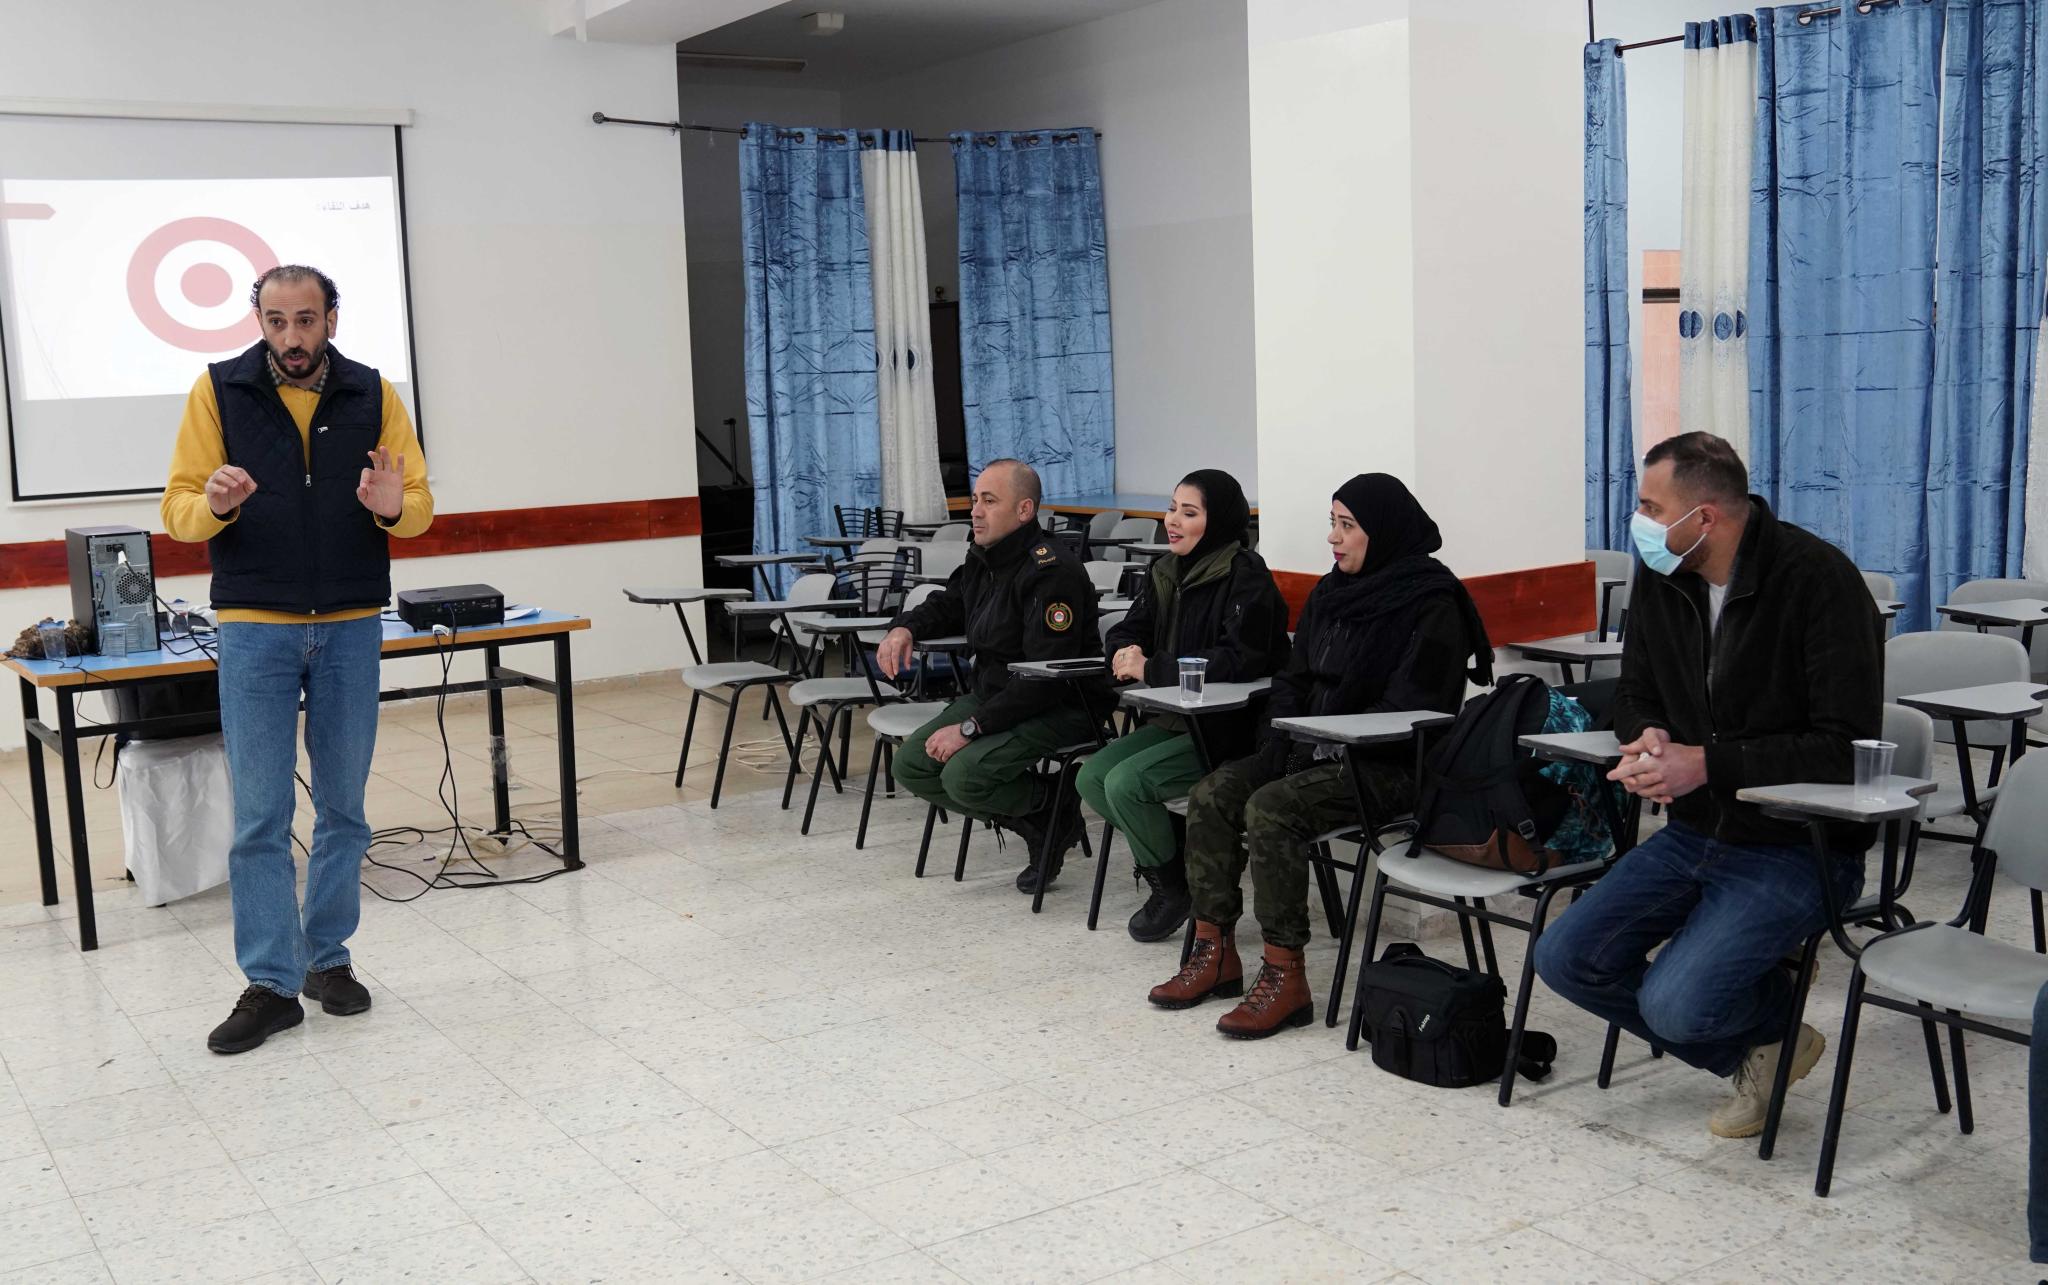 الجامعة تنظم دورة تدريبية في "الإعلام والتصوير" لموظفي العلاقات العامة في جهاز الأمن الوطني في الضفة